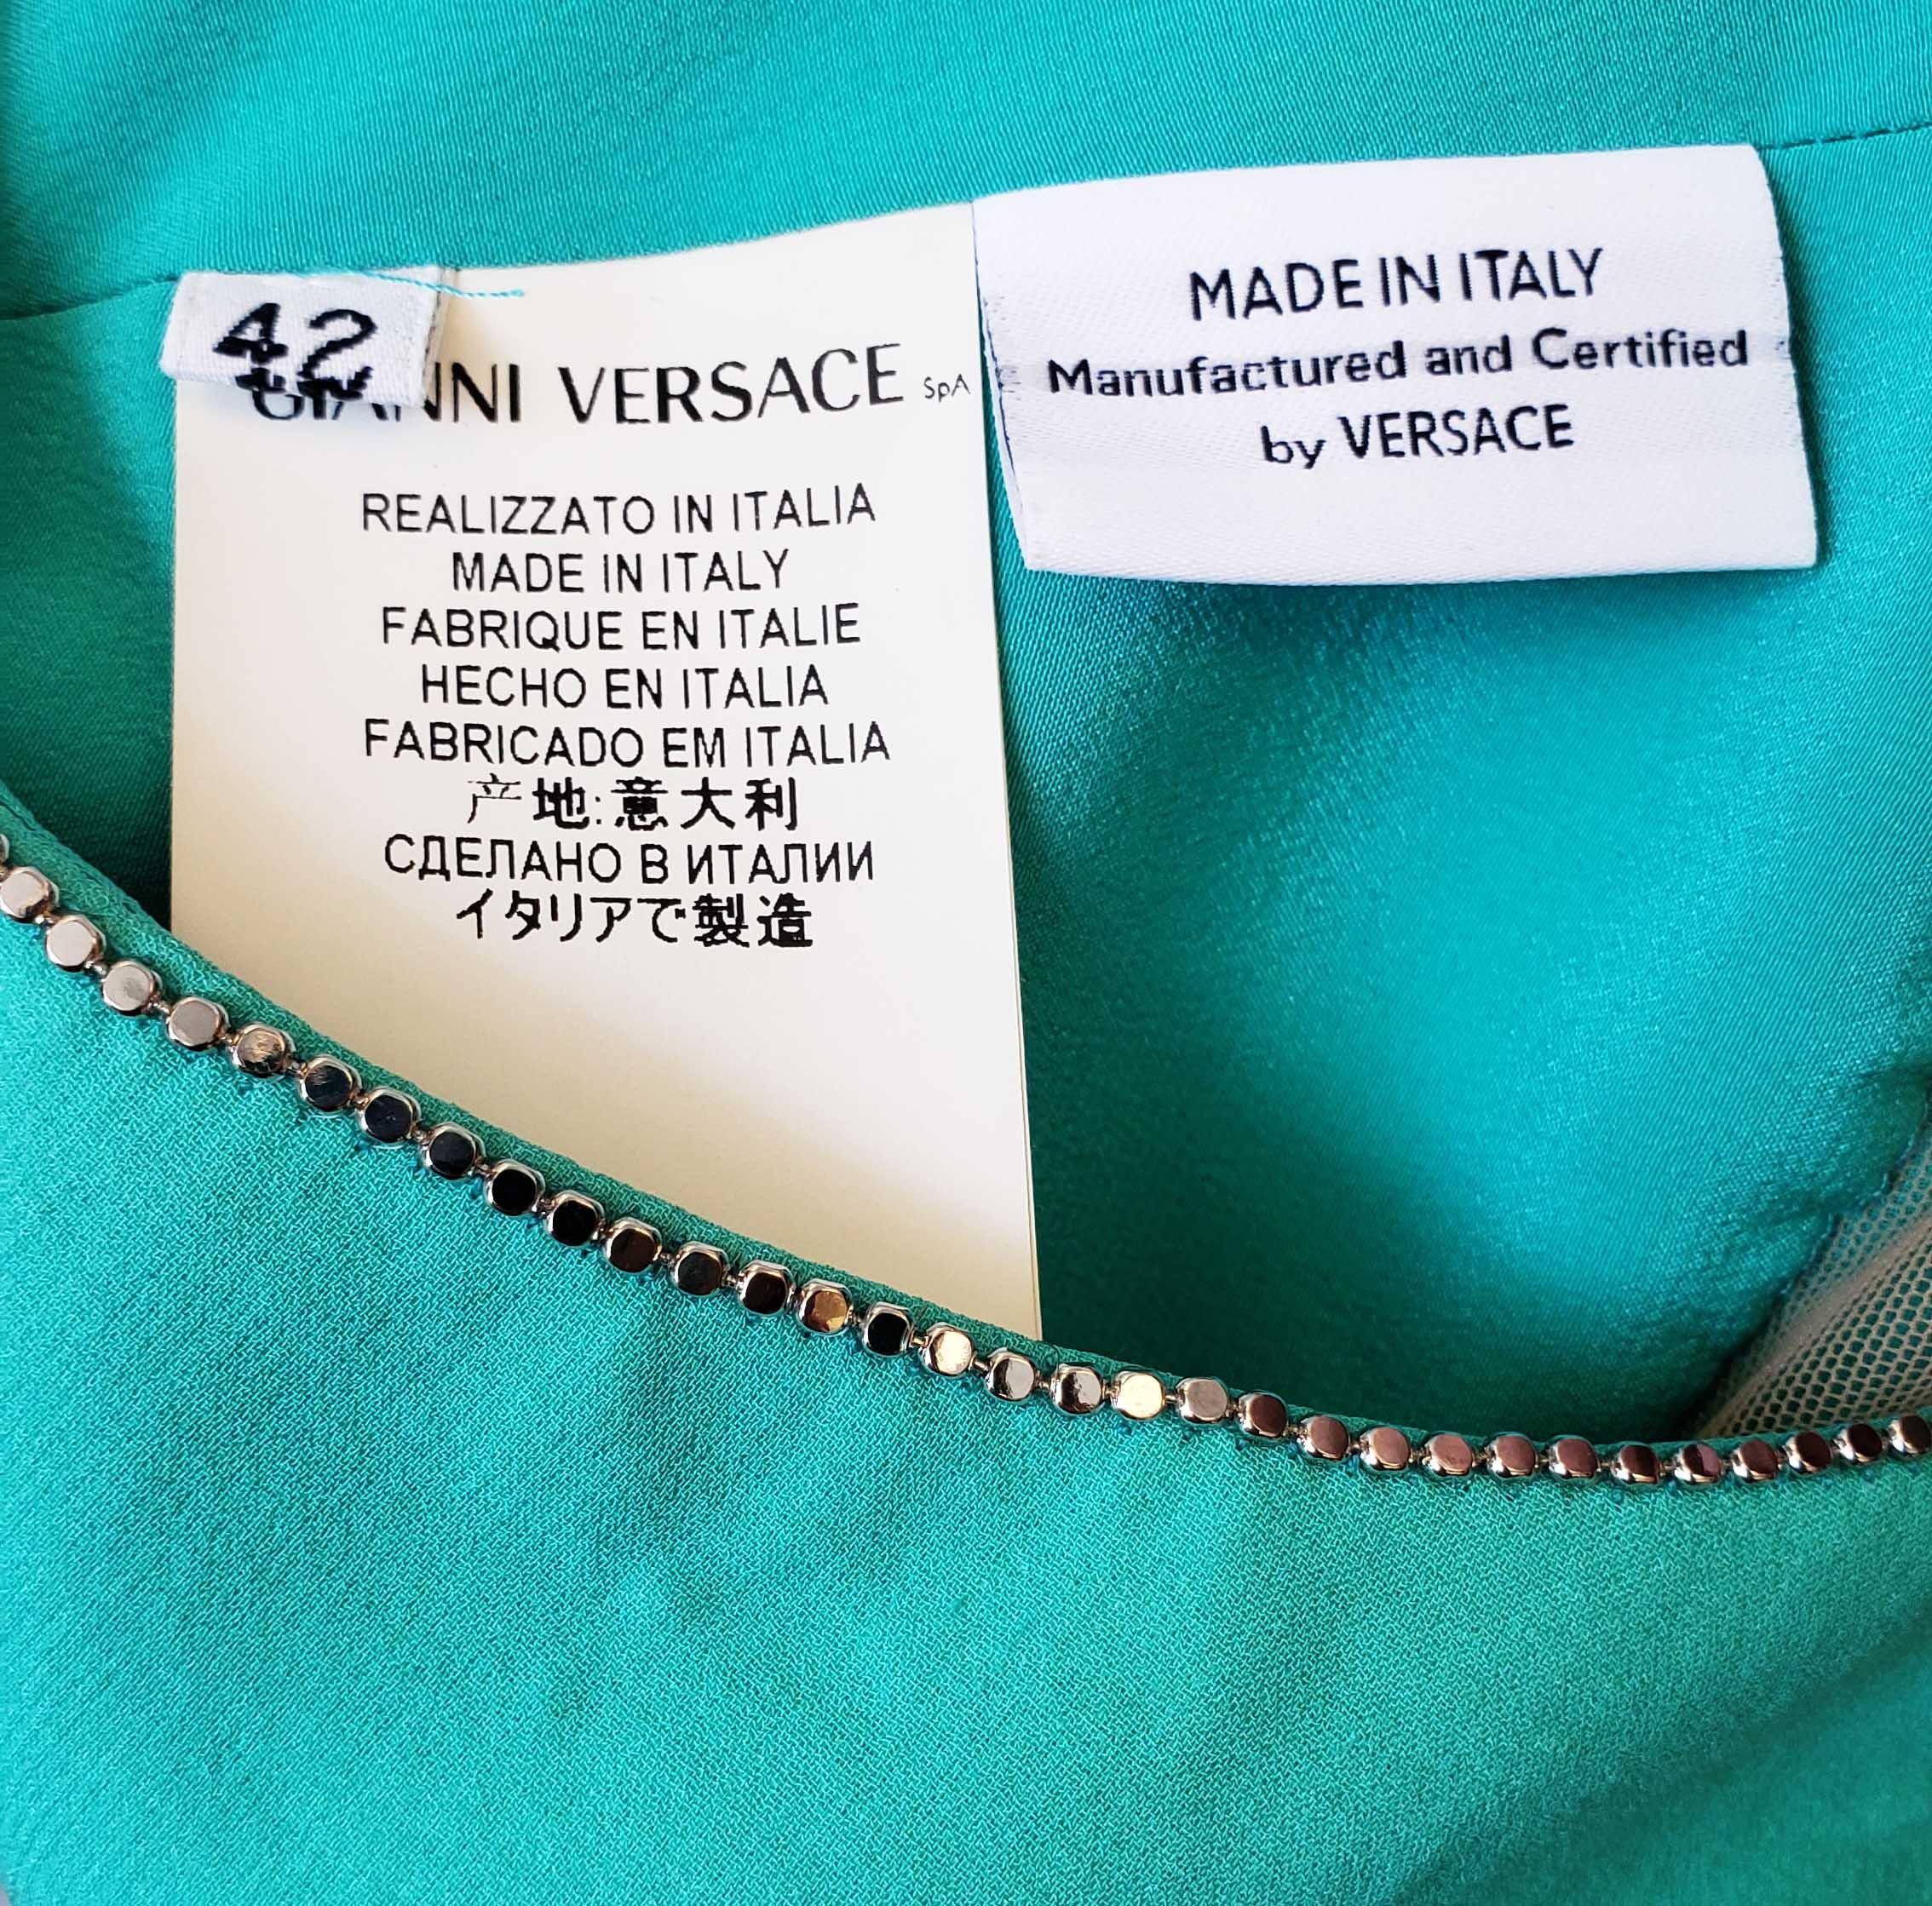 S/2010 L# 46 VERSACE AQUAMARINE EMBELLISHED ONE SHOULDER LONG DRESS Gown 40, 42 For Sale 7